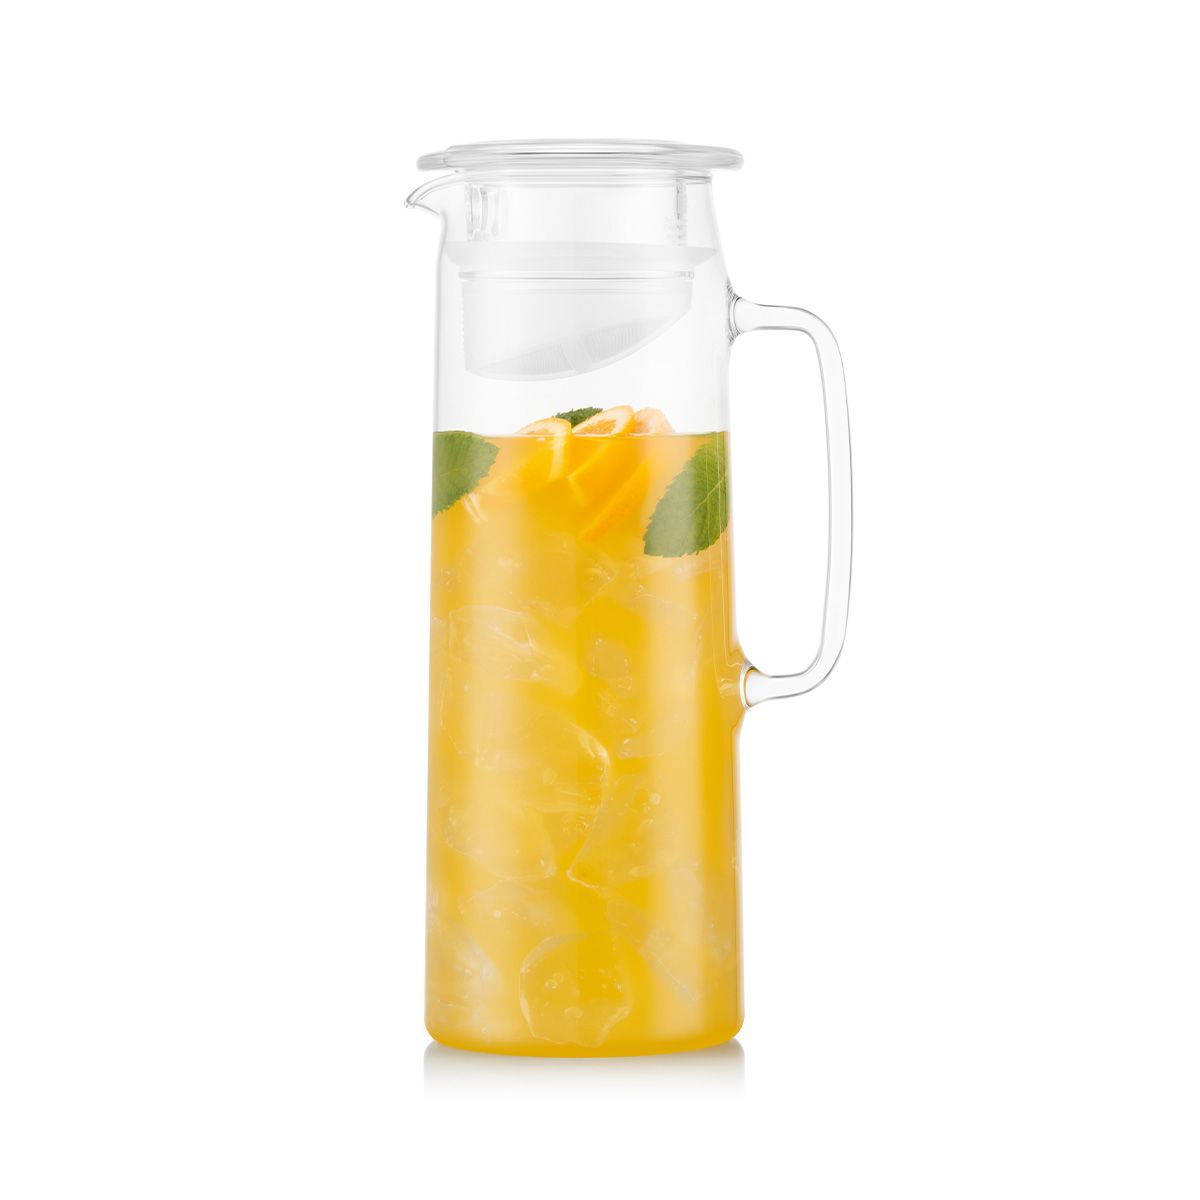 Pichet à eau en verre avec couvercle pour réfrigérateur - 1.2L